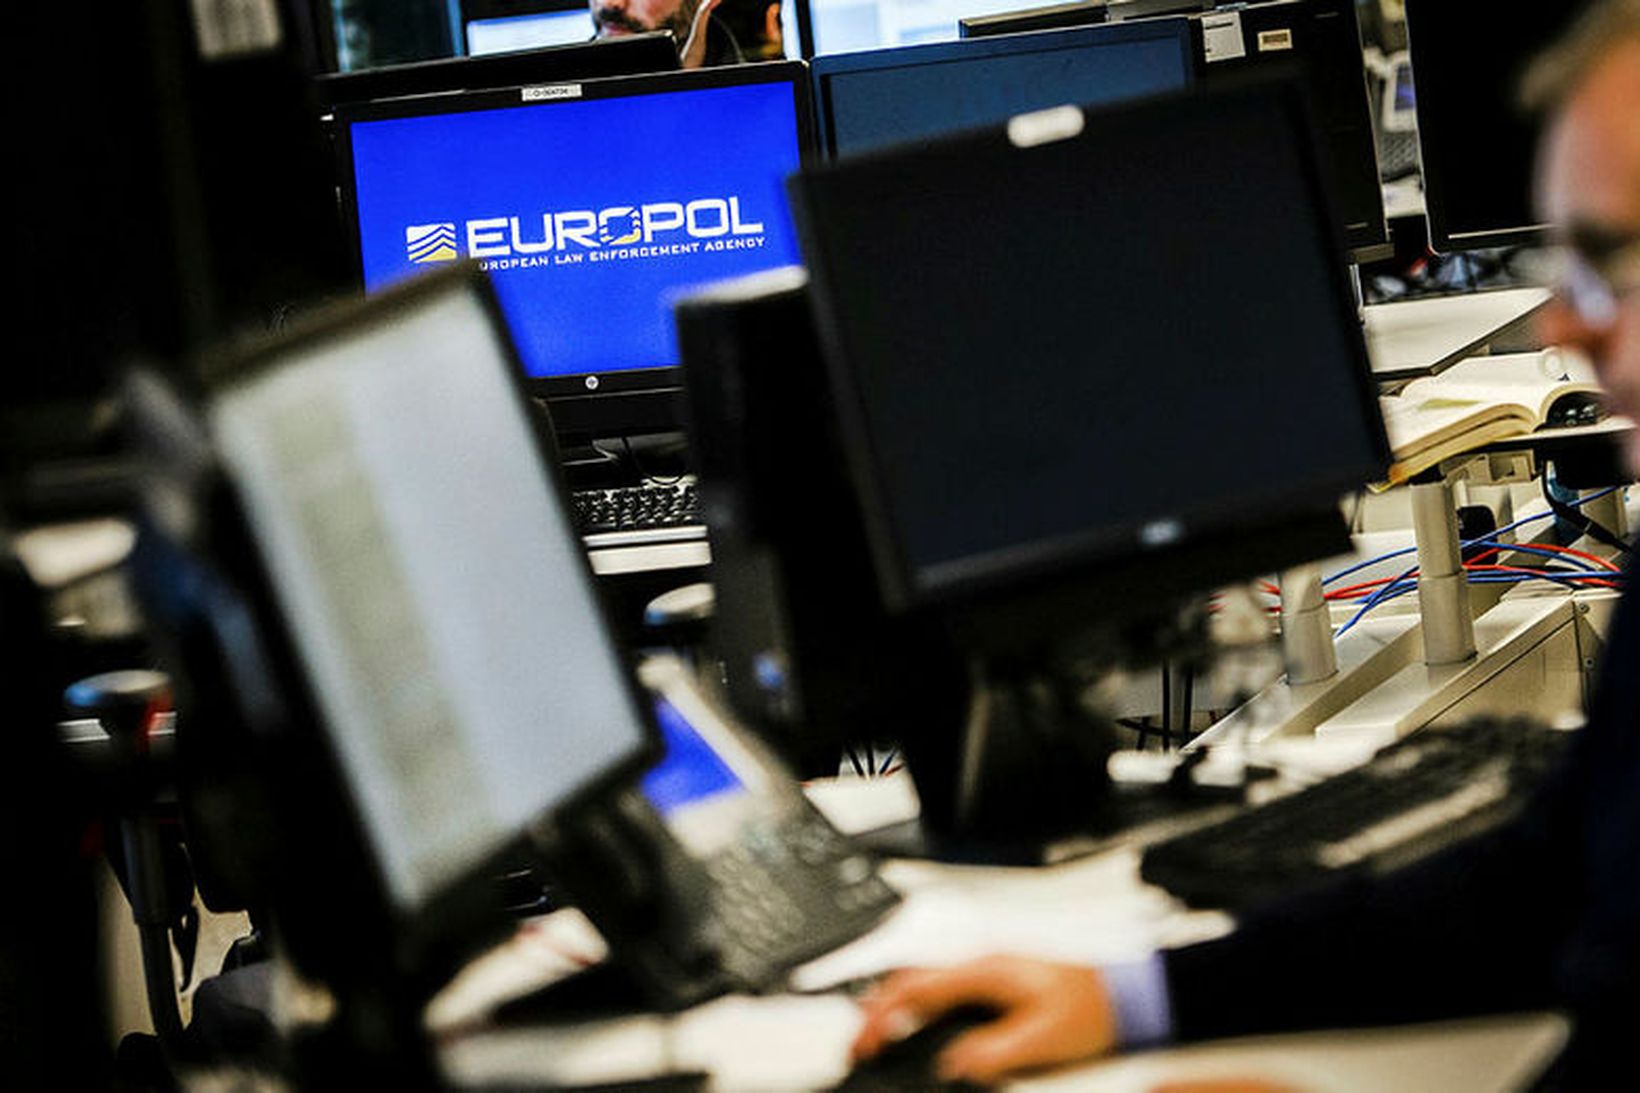 Rannsóknin sú stærsta sem framkvæmd hefur verið hjá Europol á …